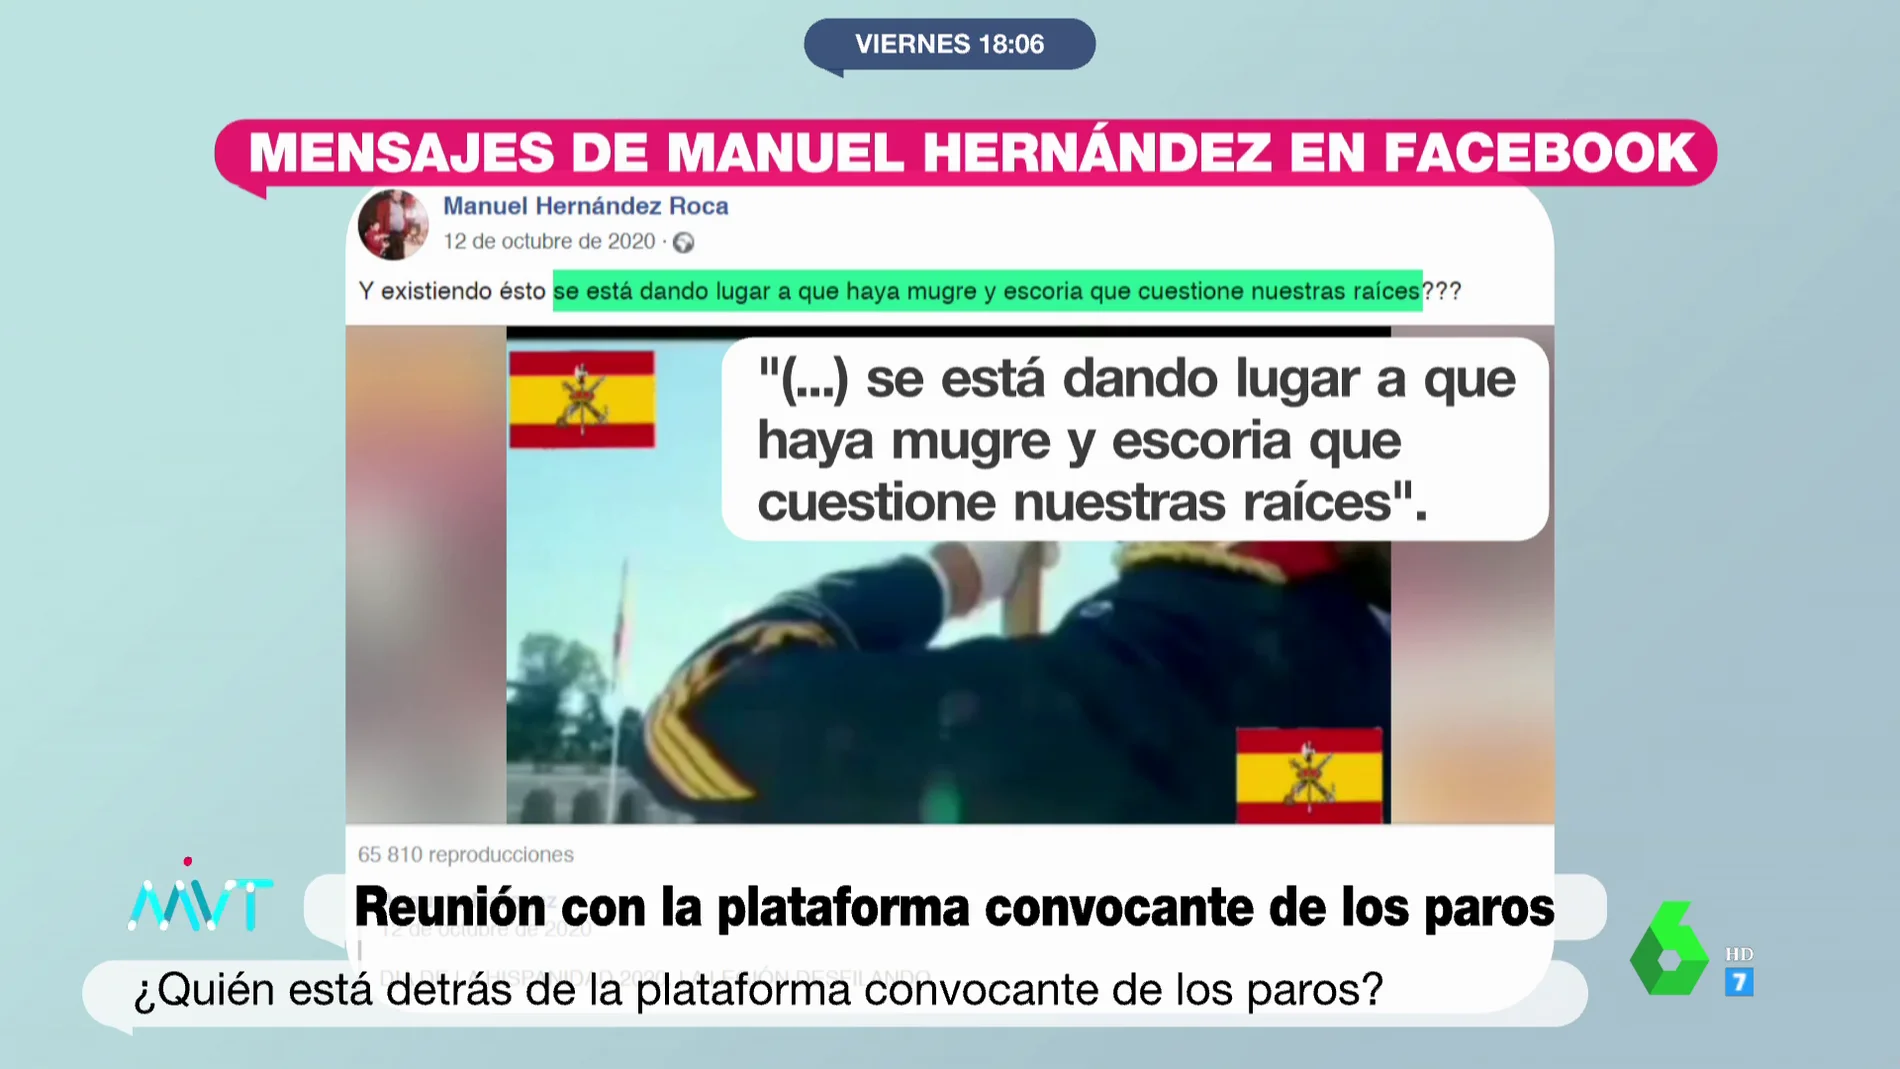 Los mensajes de Manuel Hernández, de la Plataforma de Transporte, por los que se le vincula con la extrema derecha